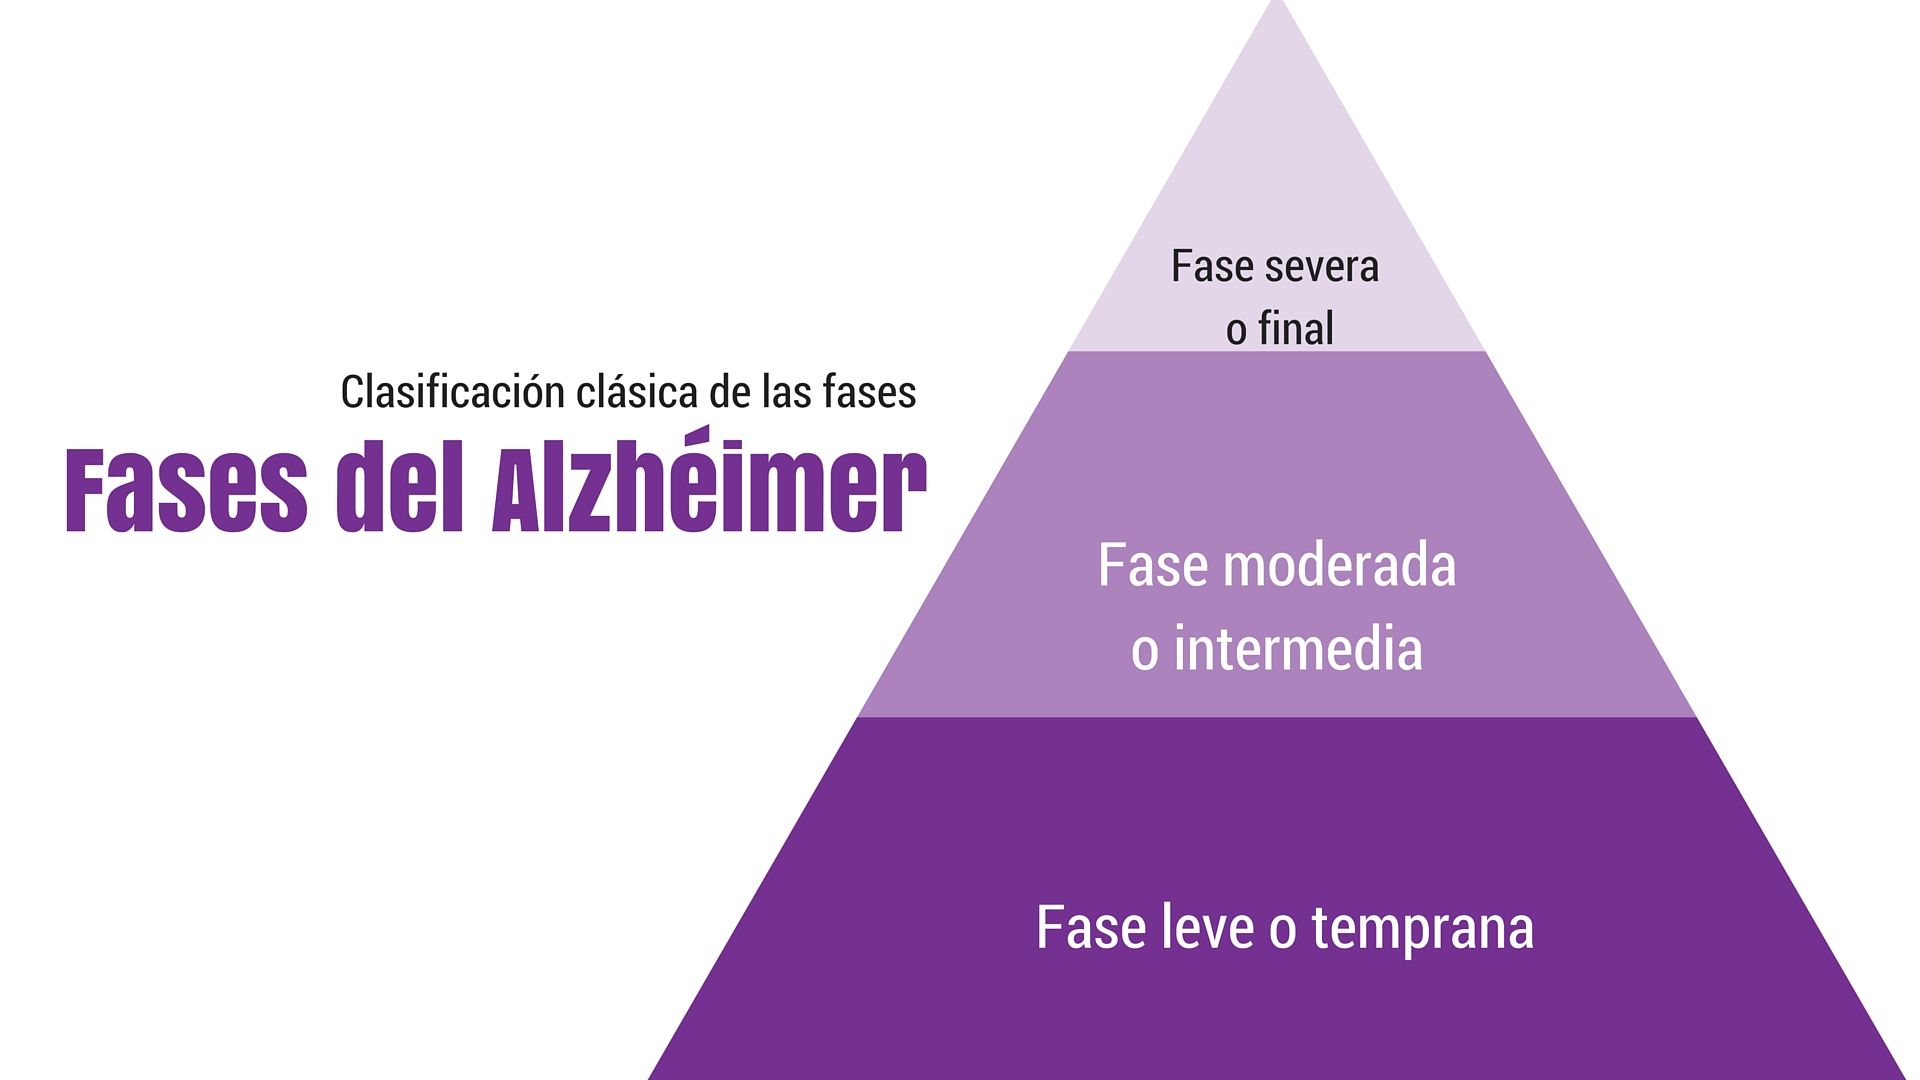 Fases de la enfermedad de Alzheimer